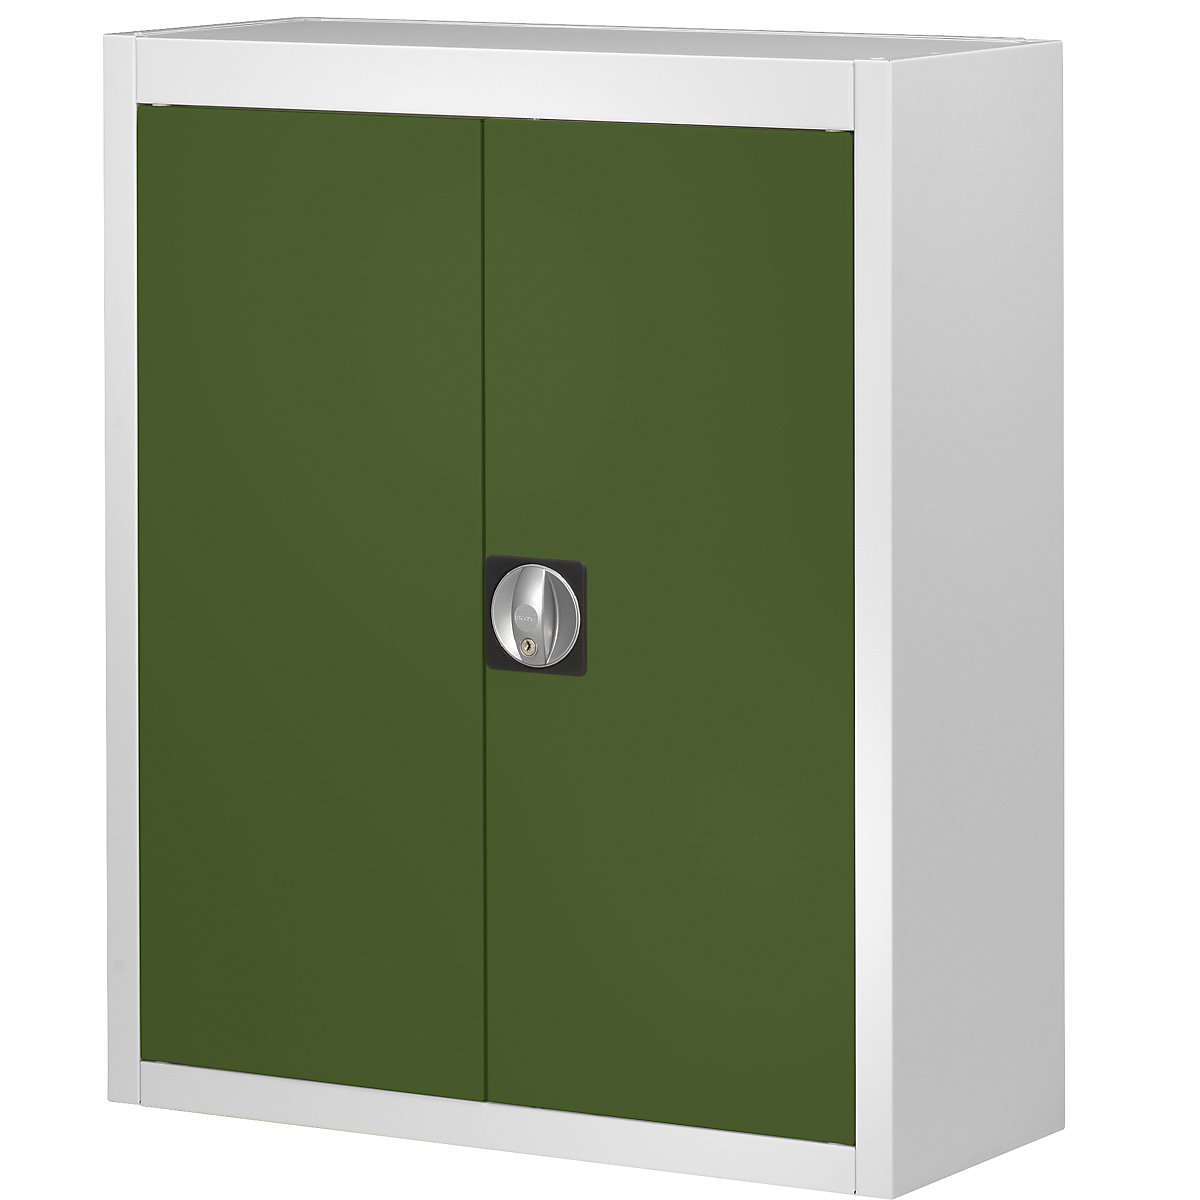 Skladová skříň, bez přepravek s viditelným obsahem – mauser, v x š x h 820 x 680 x 280 mm, dvoubarevná, korpus šedý, dveře zelené-3